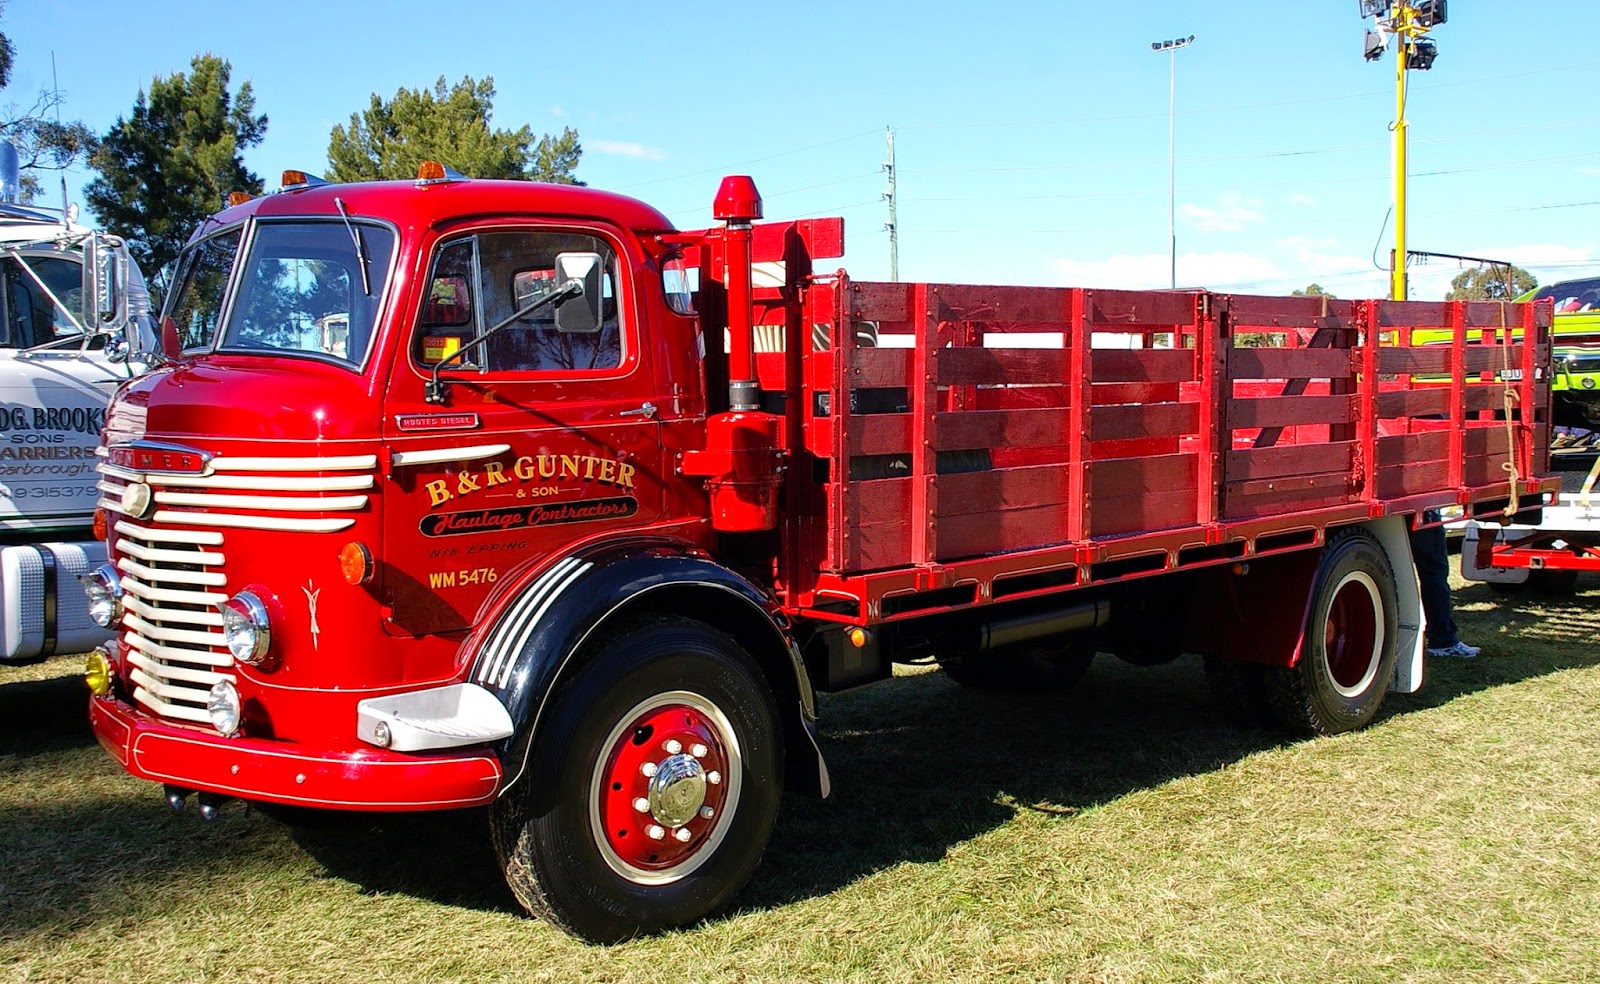 Historic Trucks: Commer trucks